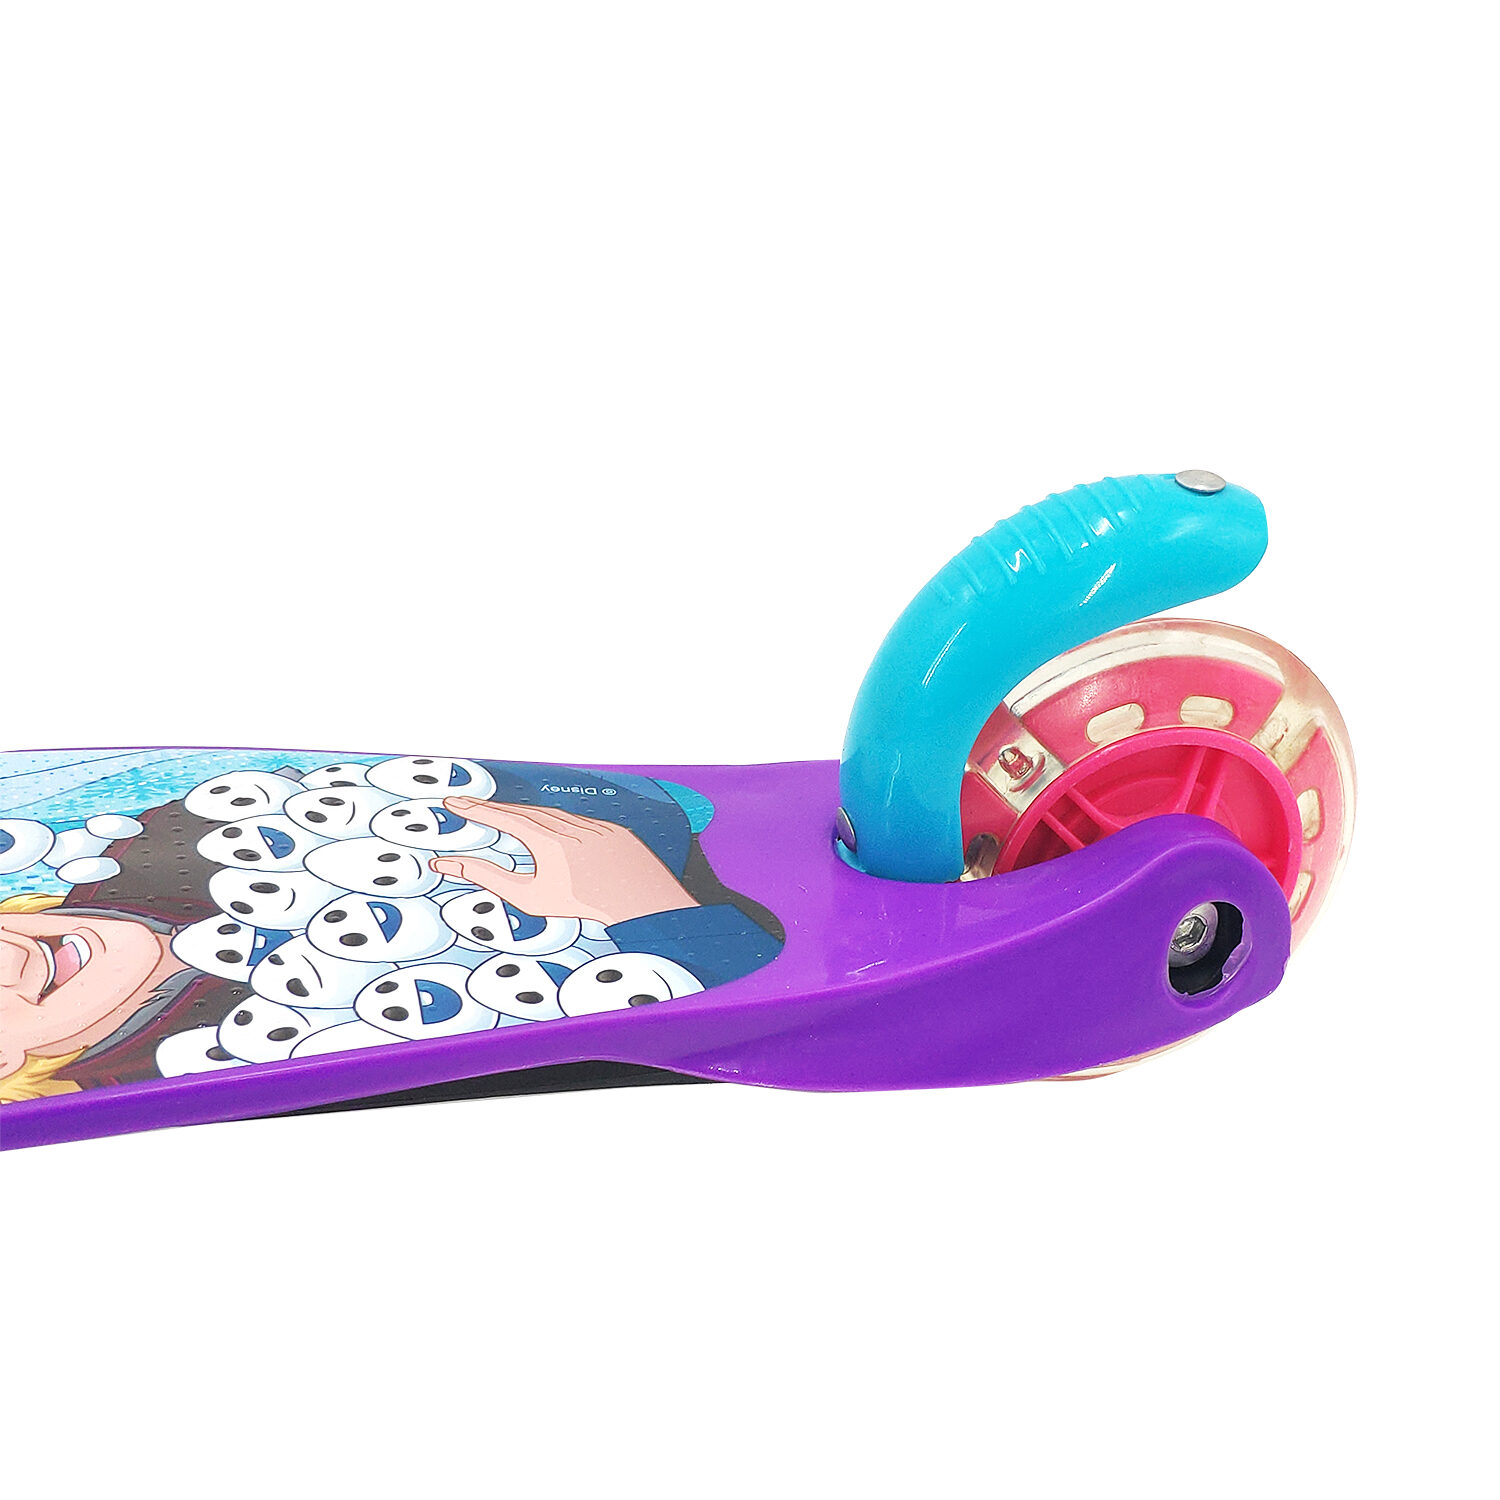 Самокат детский трехколесный 1toy Disney холодное сердце кикборд для девочки со светящимися колесами - фото 8